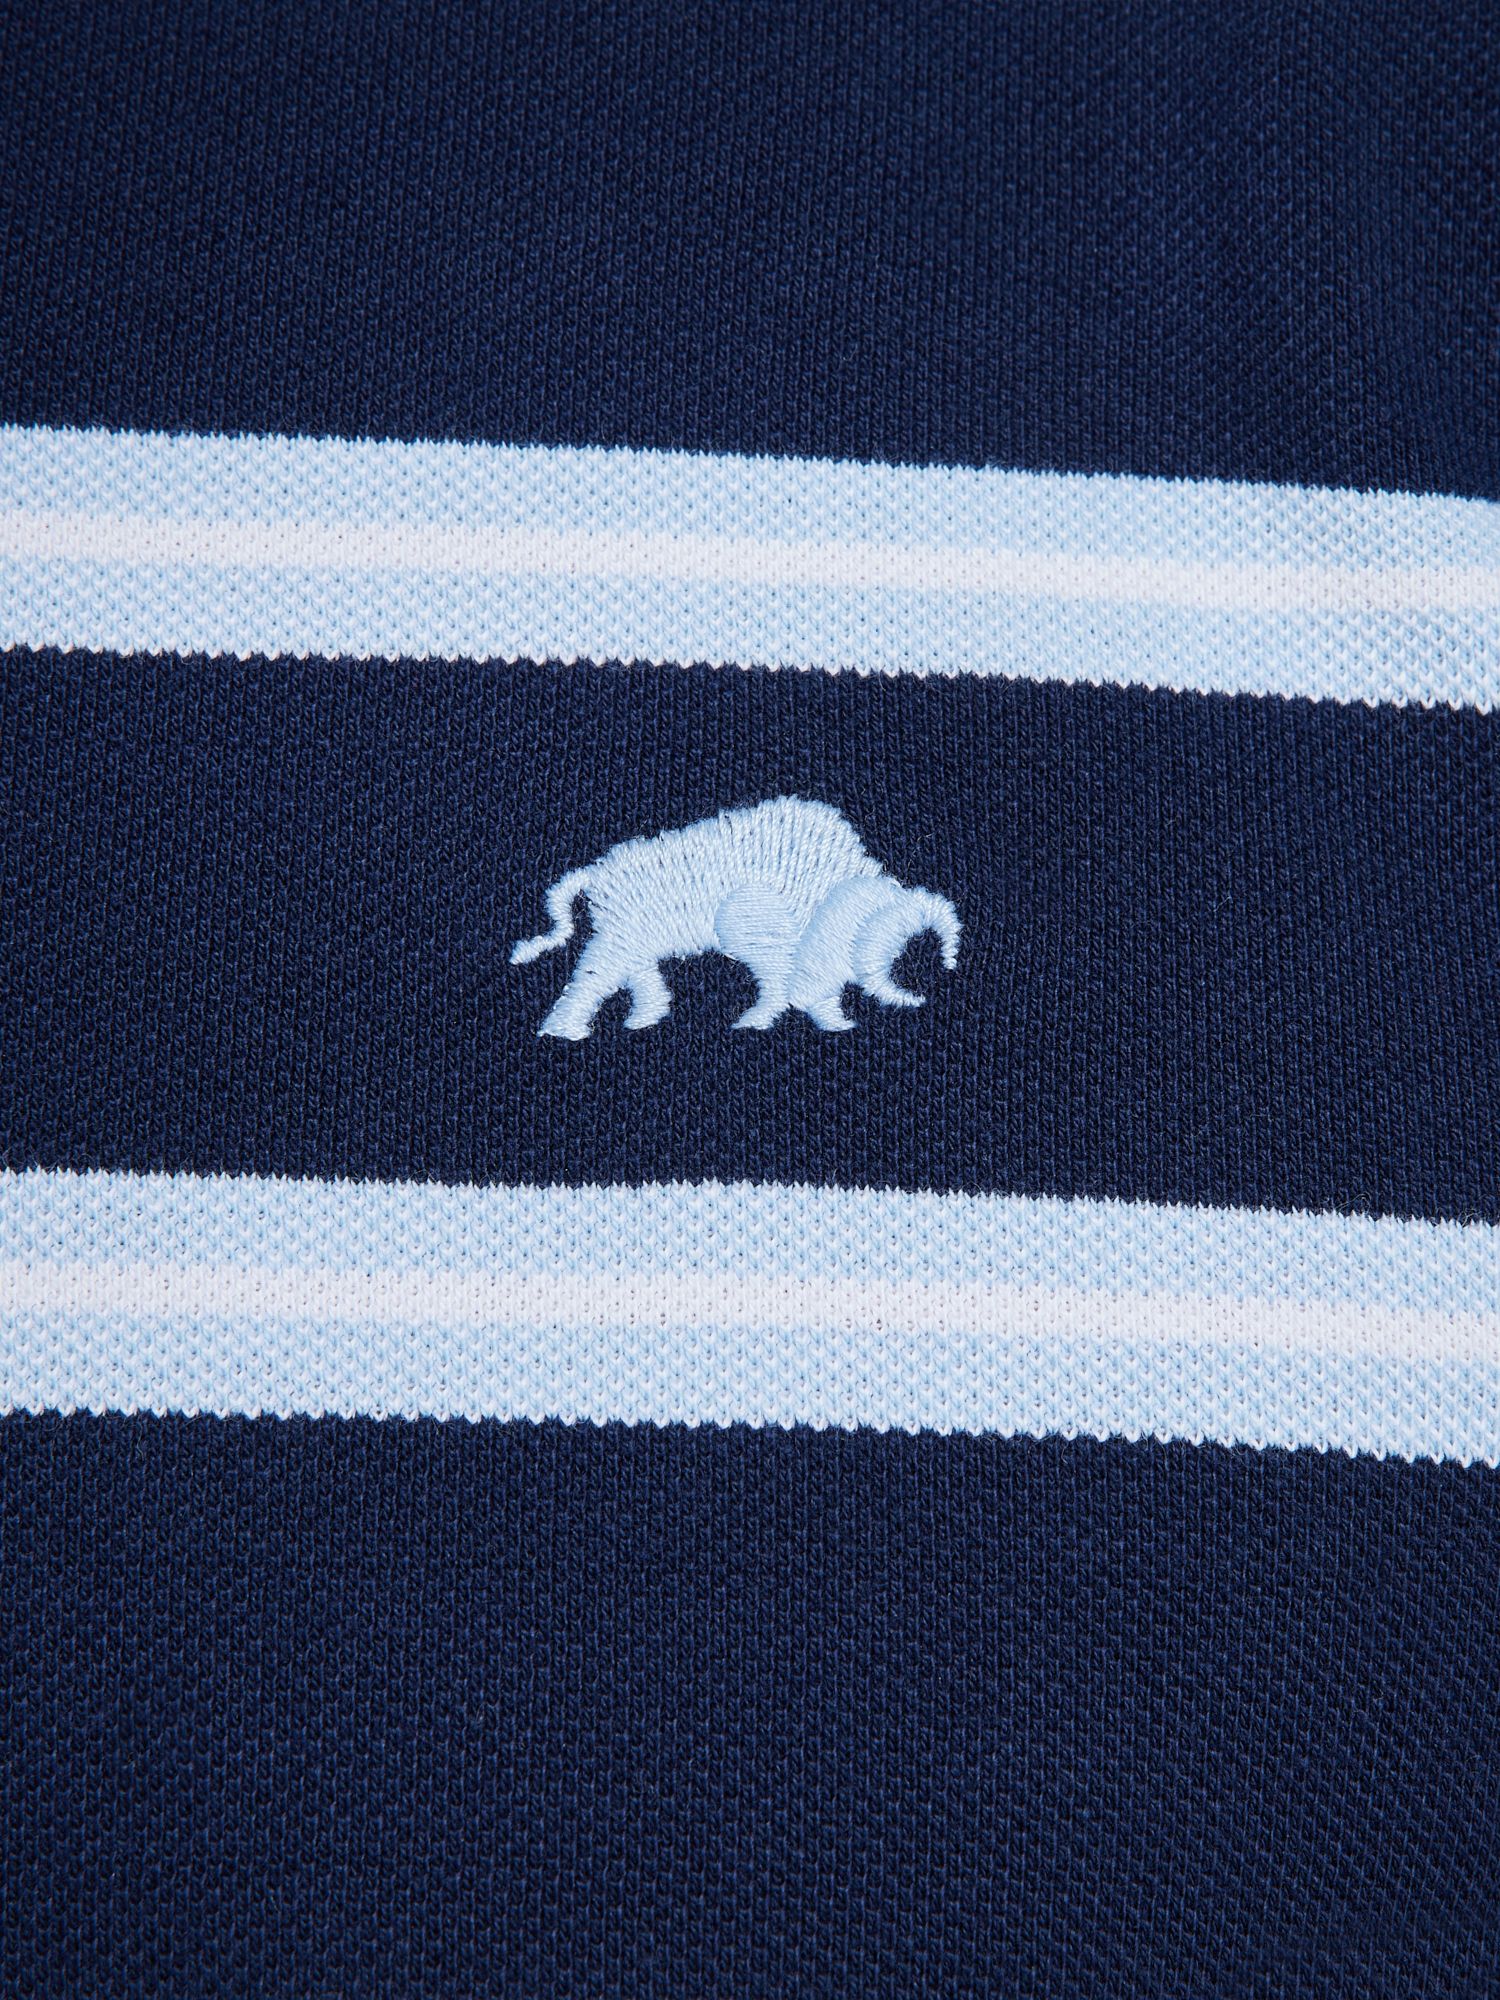 Buy Raging Bull Triple Stripe Birdseye Polo Shirt, Navy/Multi Online at johnlewis.com